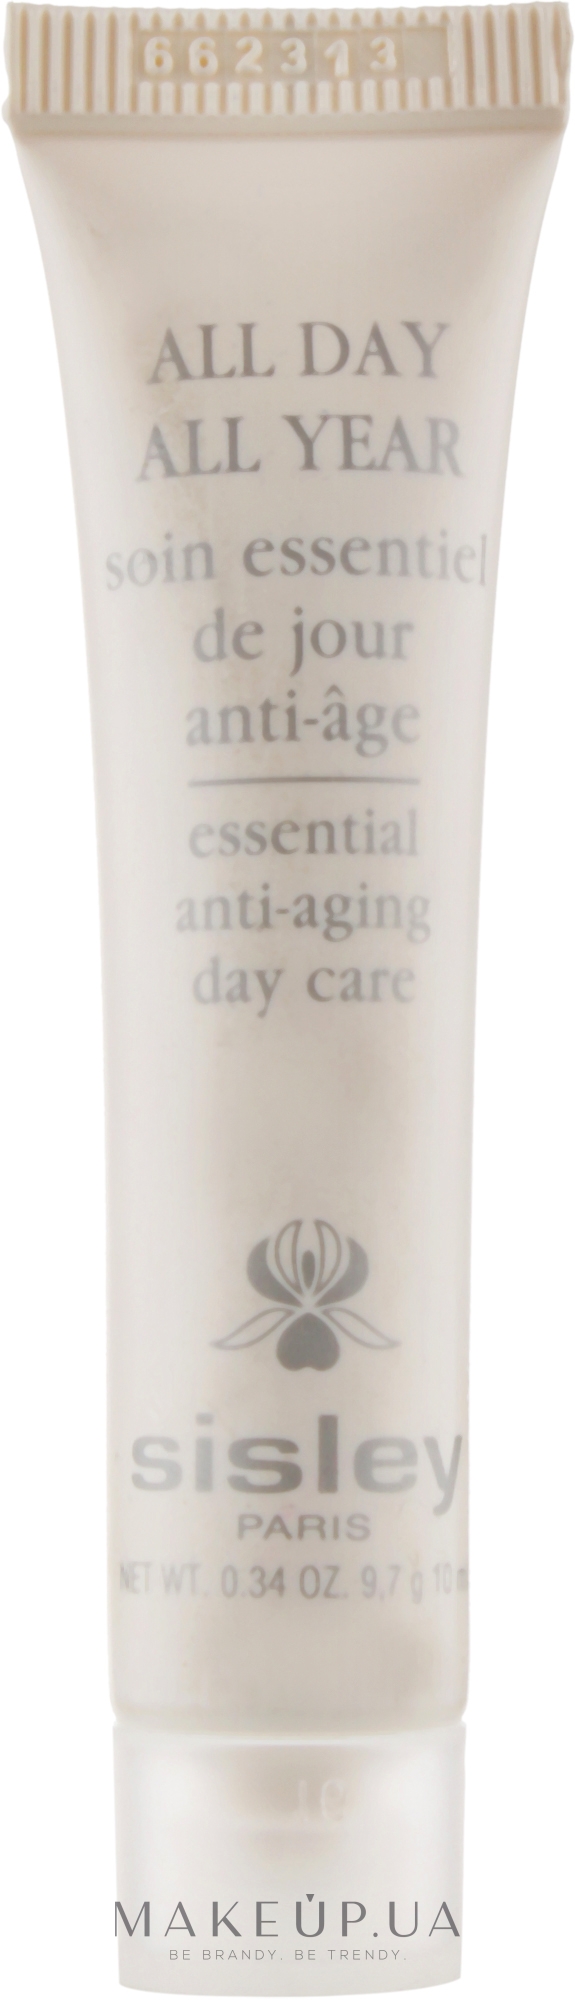 Антивіковий крем для обличчя - Sisley All Day All Year Essential Anti-aging Day Care (міні) — фото 10ml